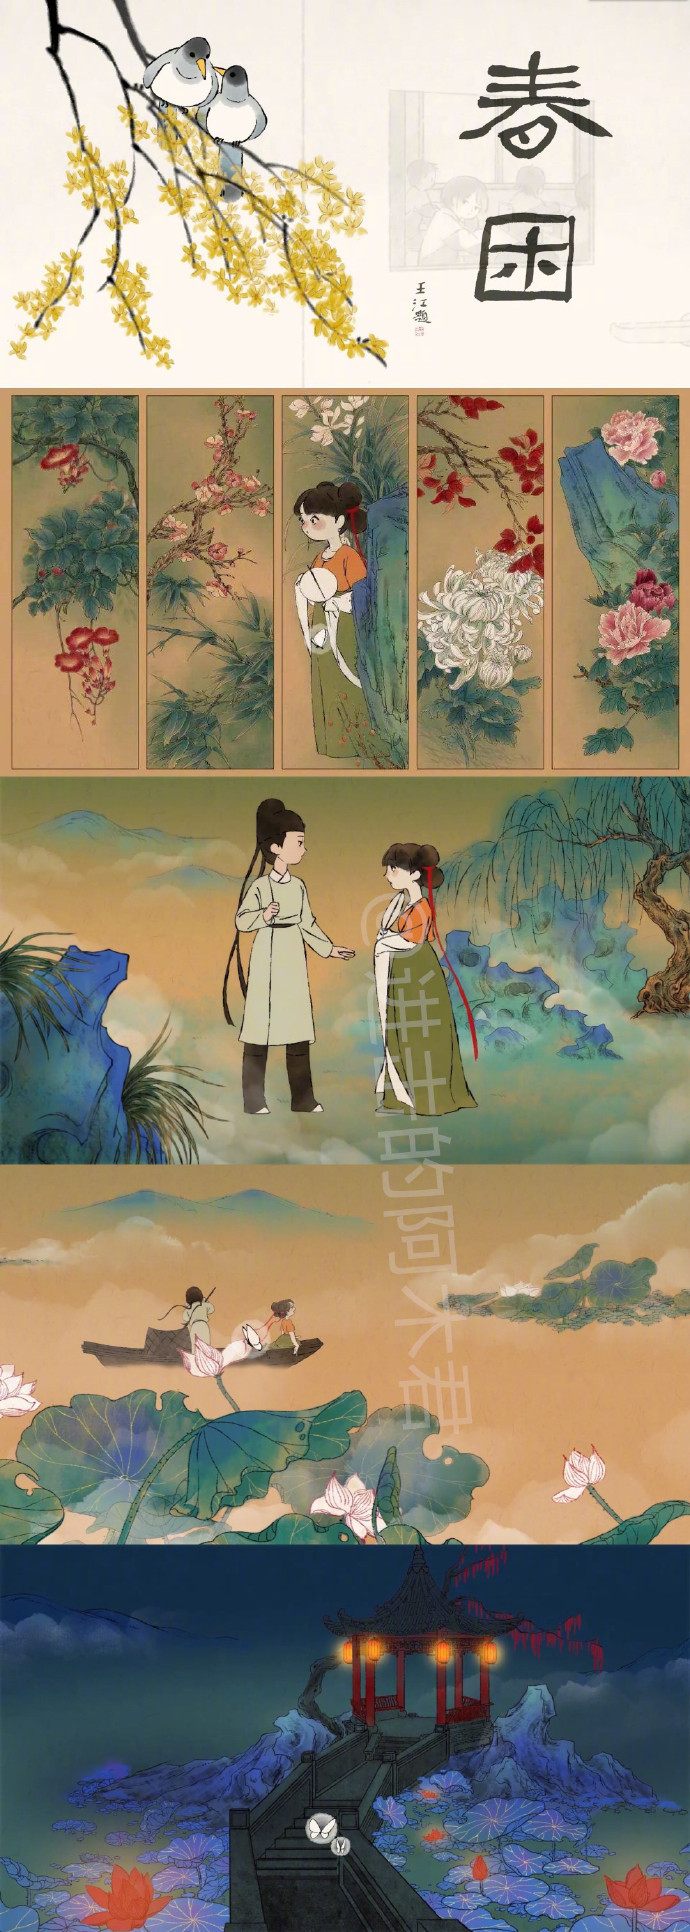 推荐9部超美的中国风动画短片,画风炸裂!